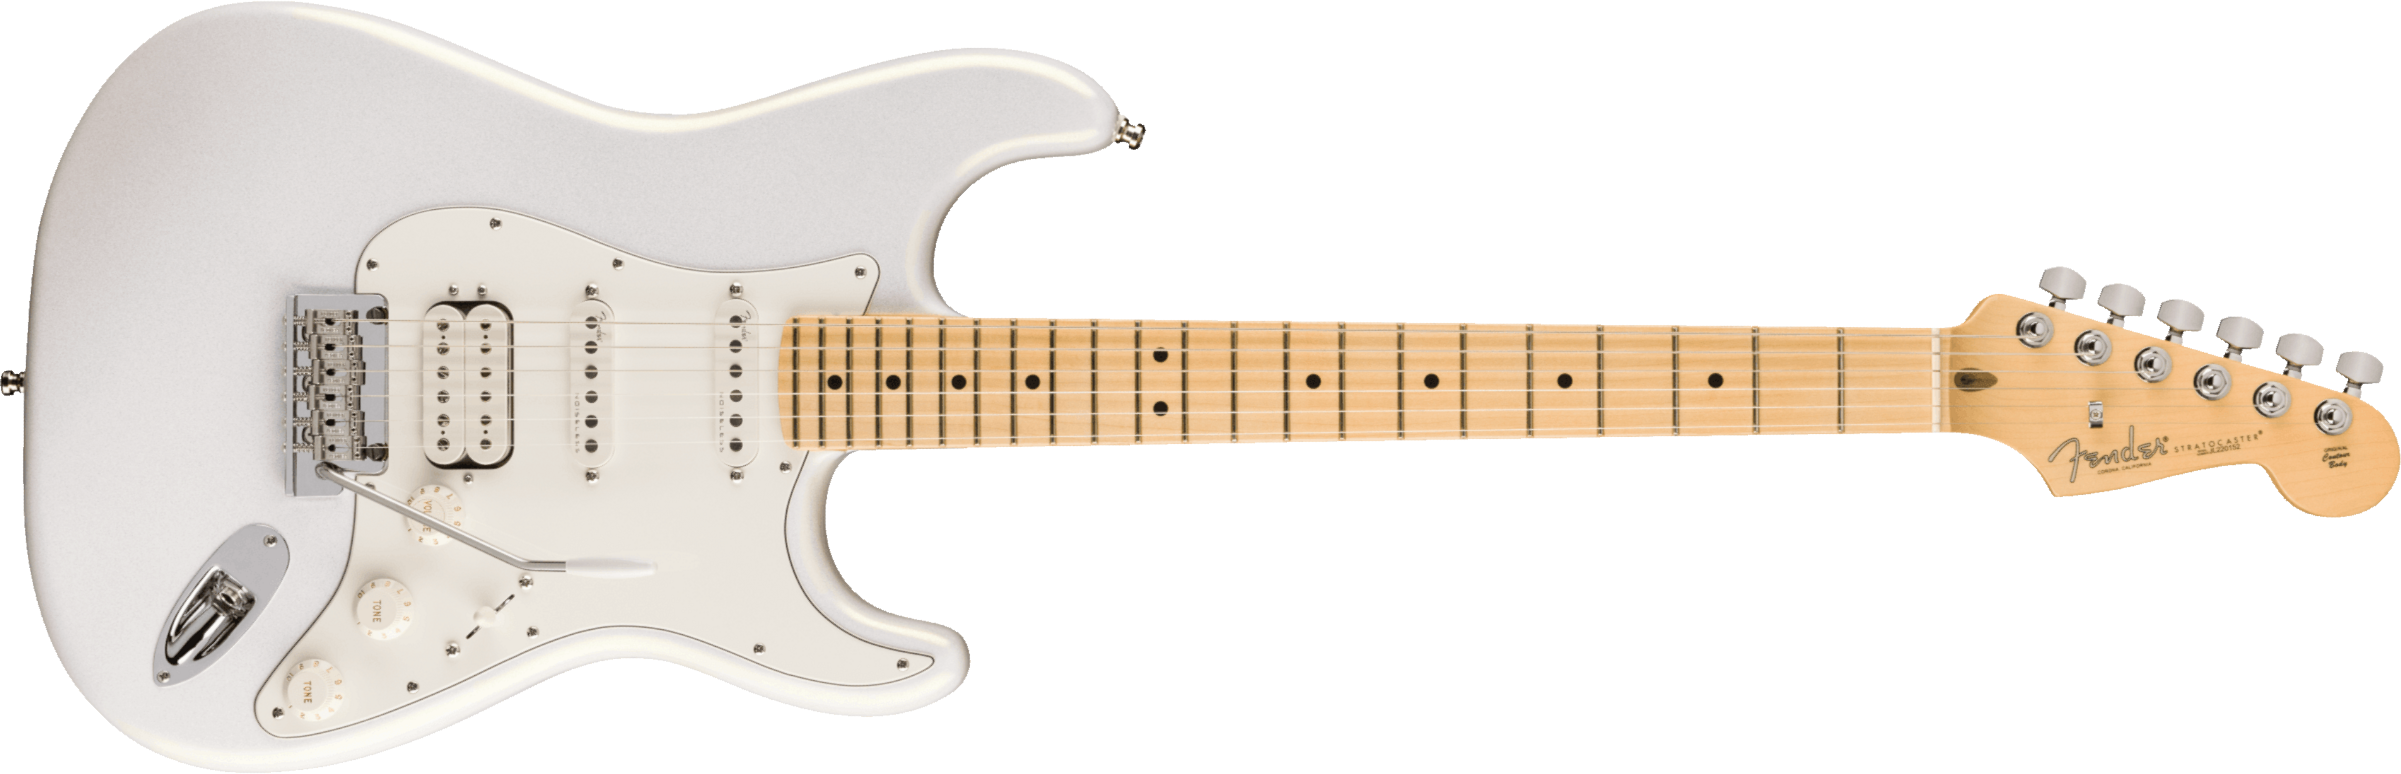 Fender Juanes Strat Trem Hss Mn - Luna White - Guitarra eléctrica con forma de str. - Main picture